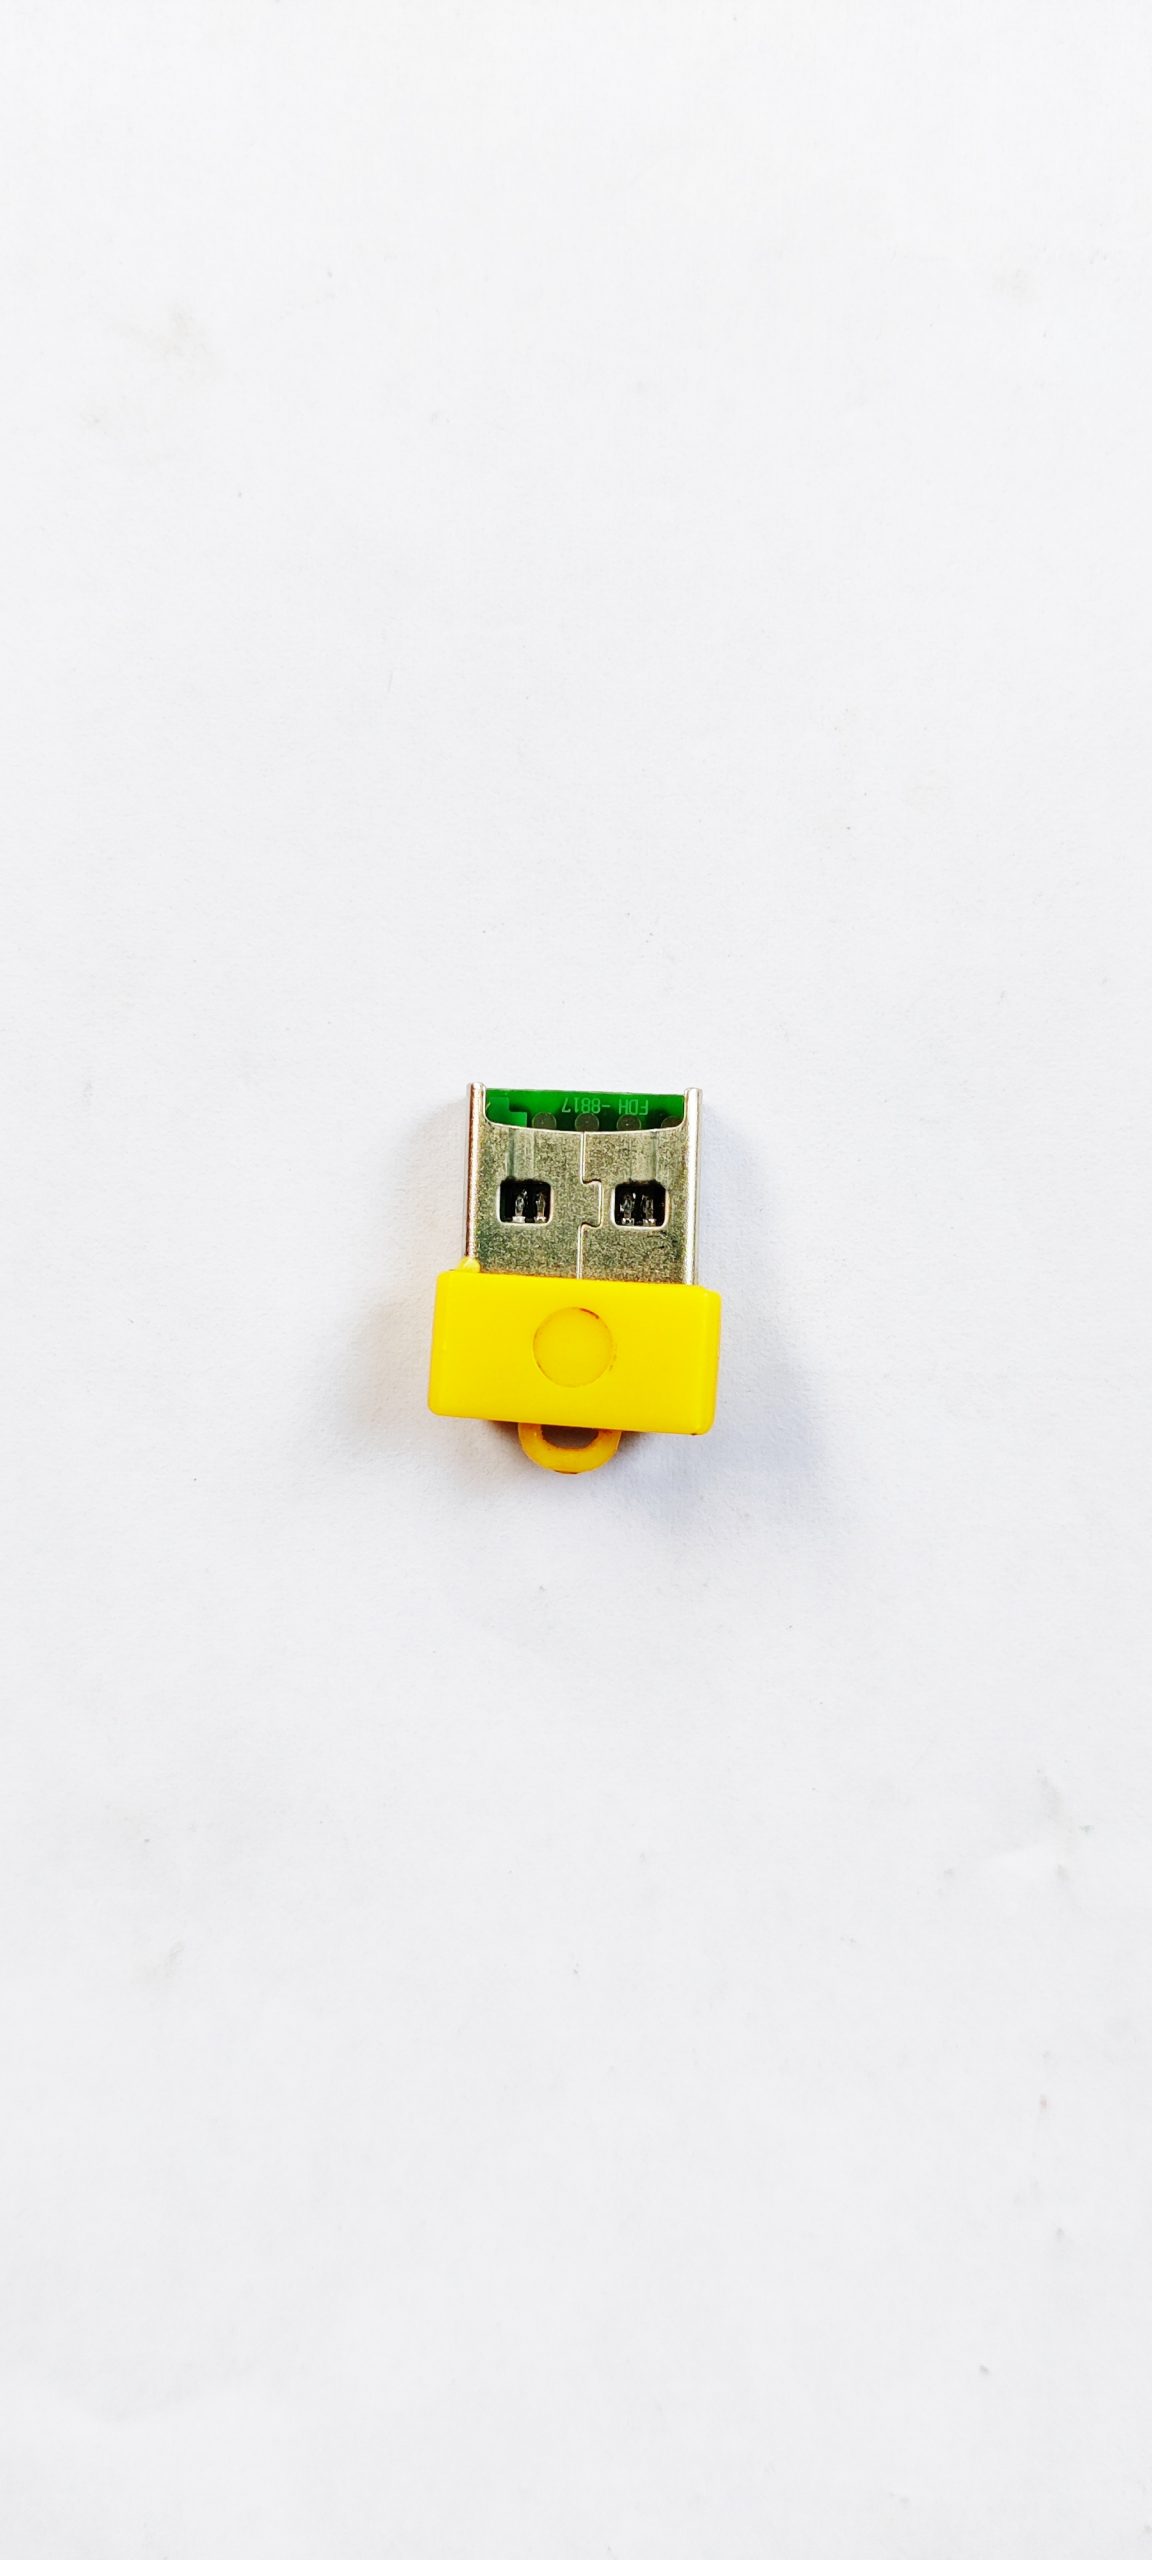 USB Card reader